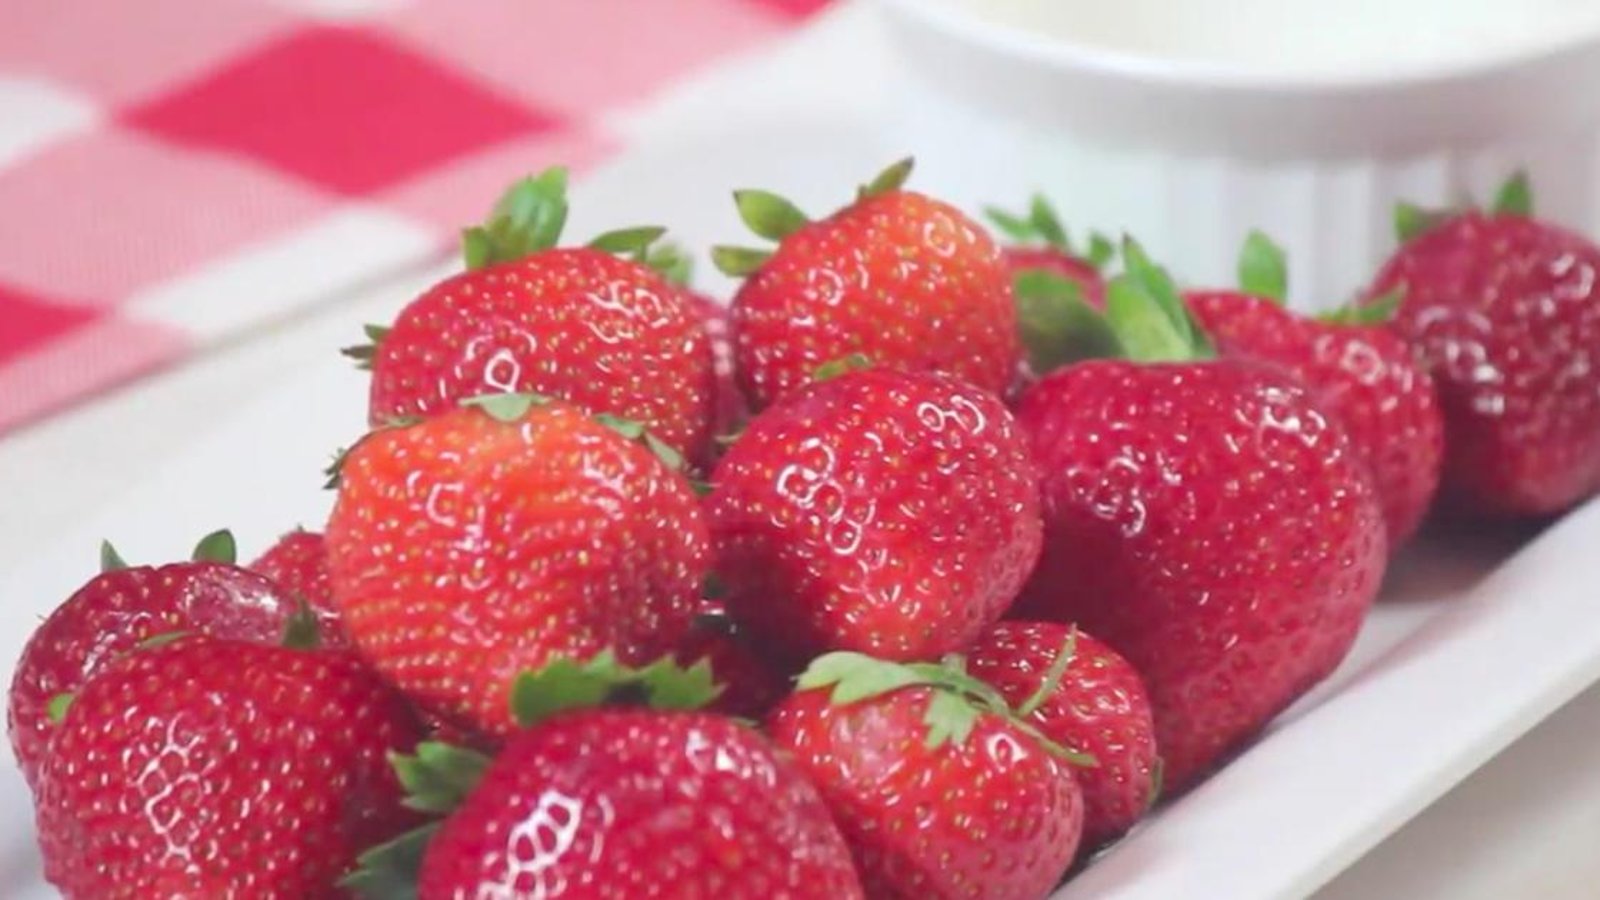 L'astuce facile pour garder les fraises fraîches au frigo pendant des semaines